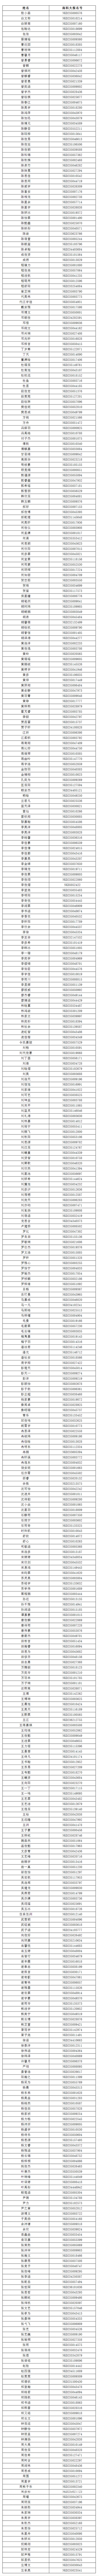 南方科技大学2023年综合评价初审名单（重庆）